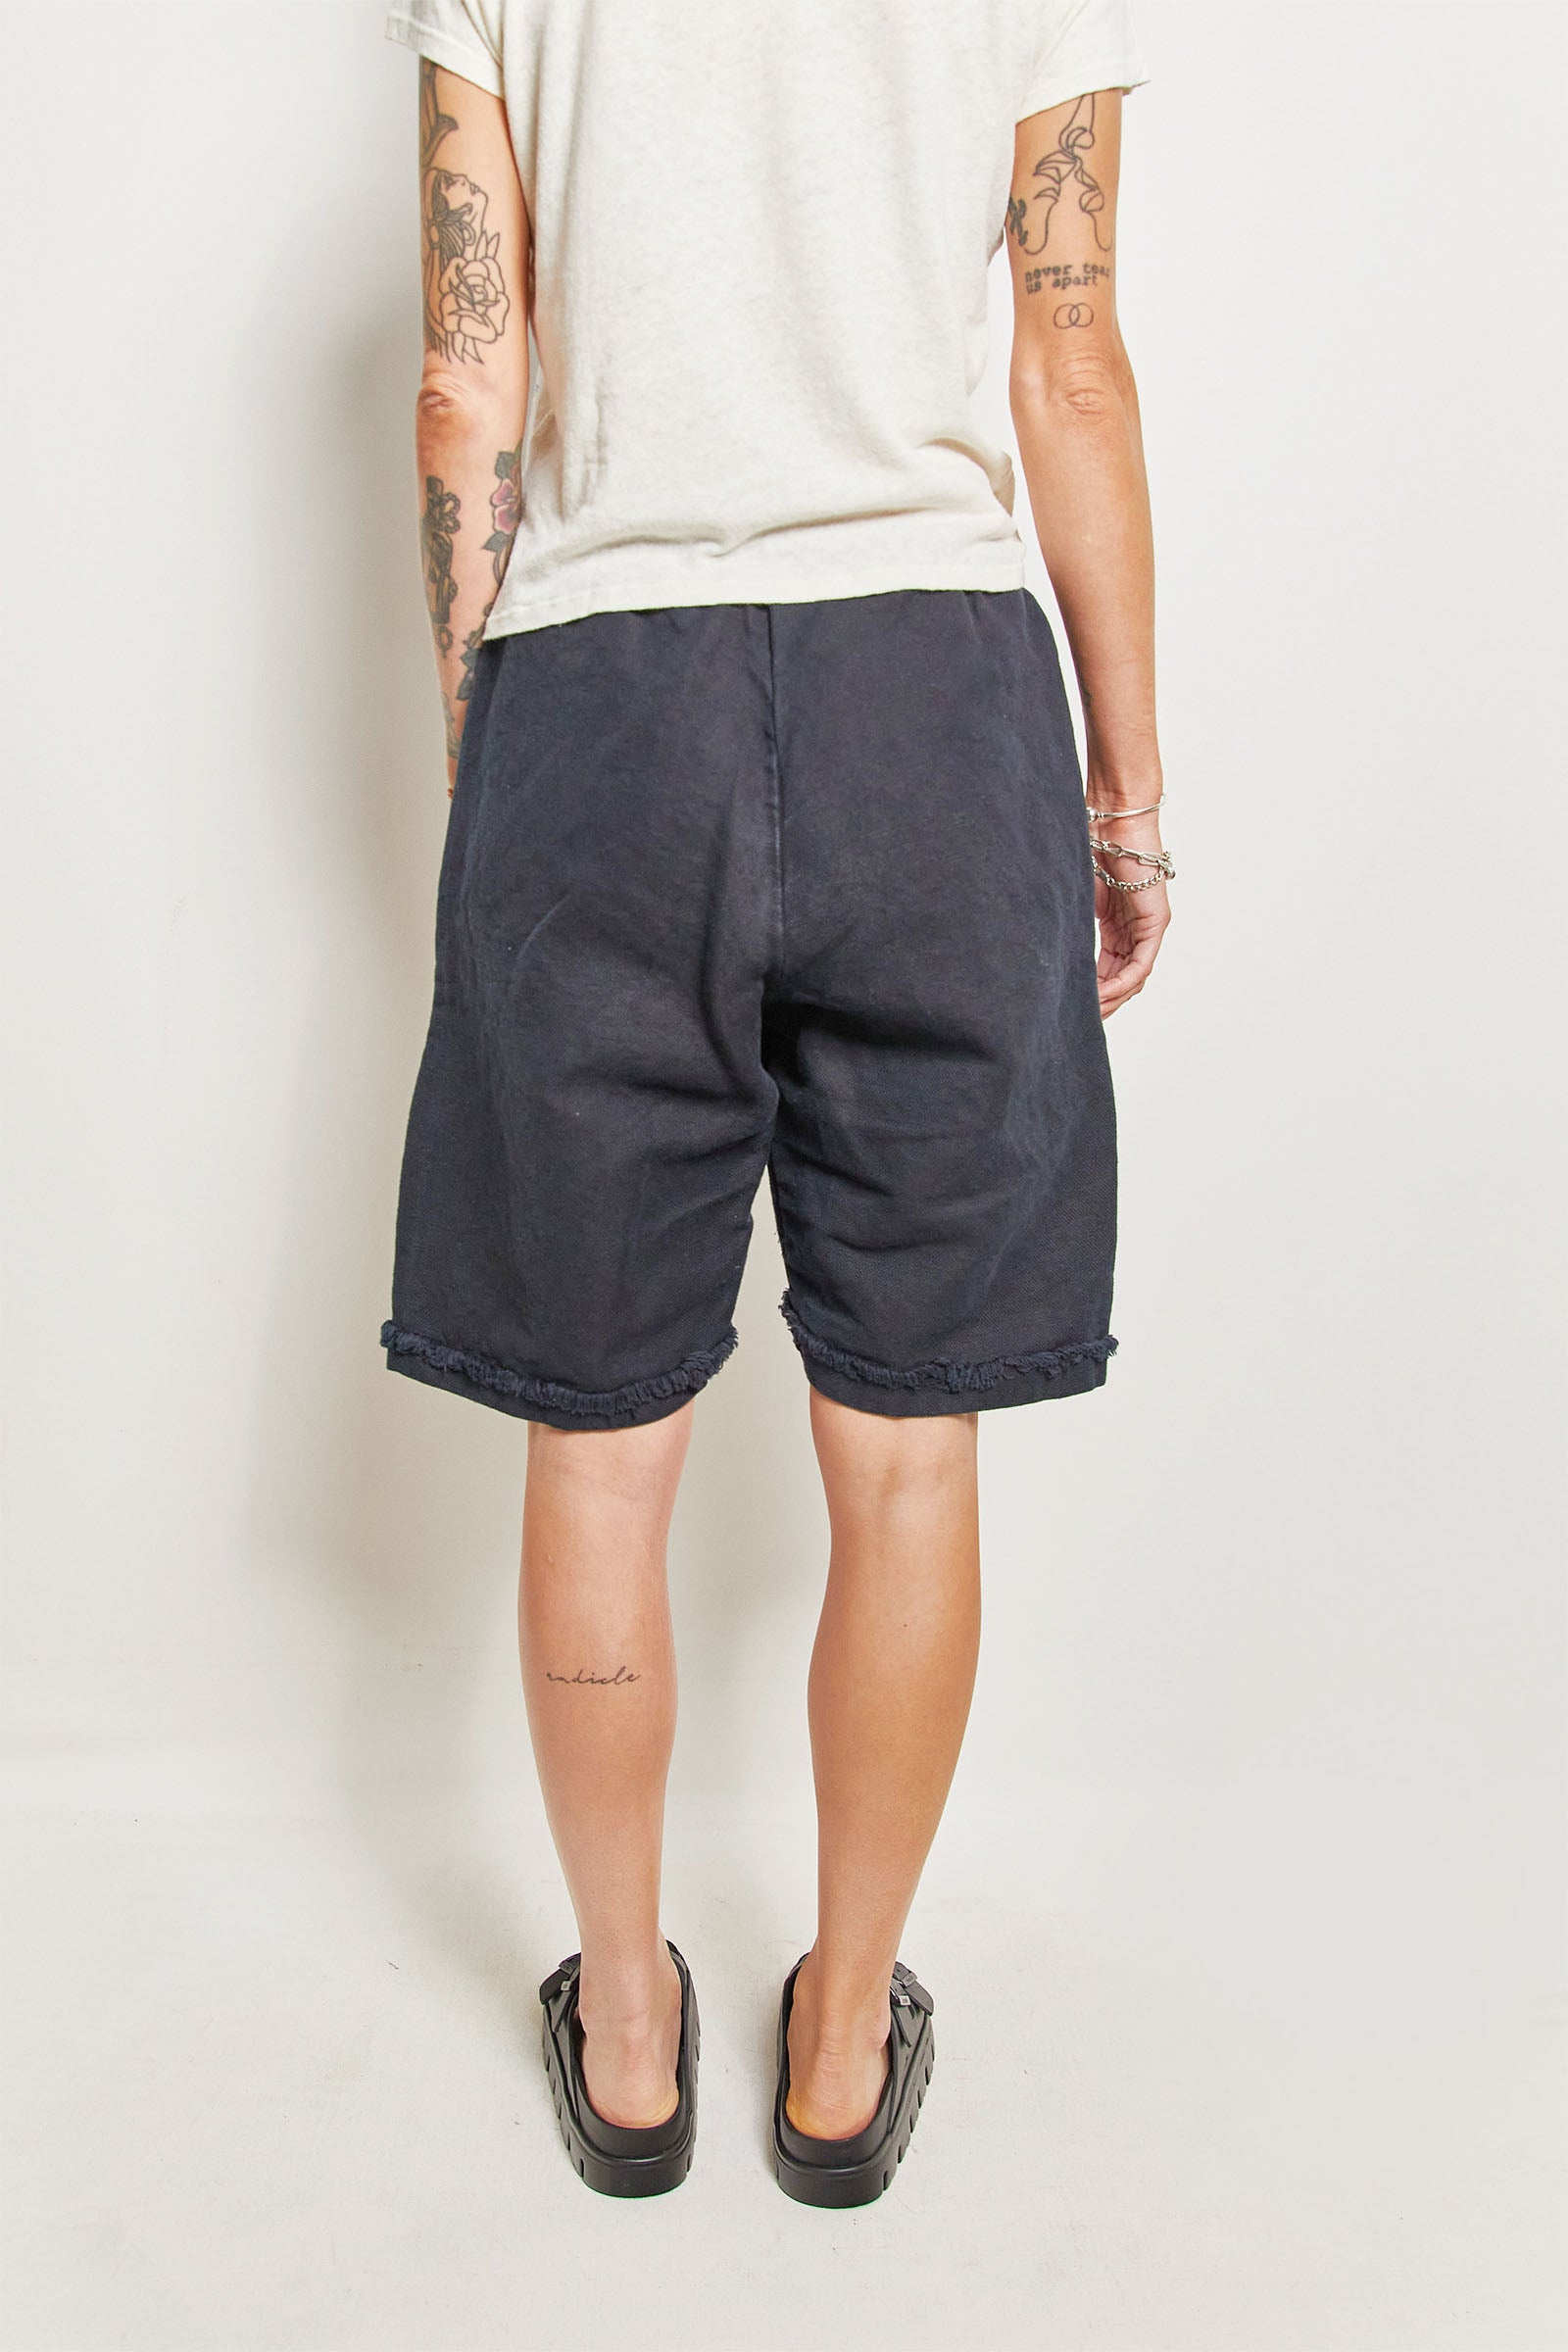 byfreer's cotton linen kooler shorts.